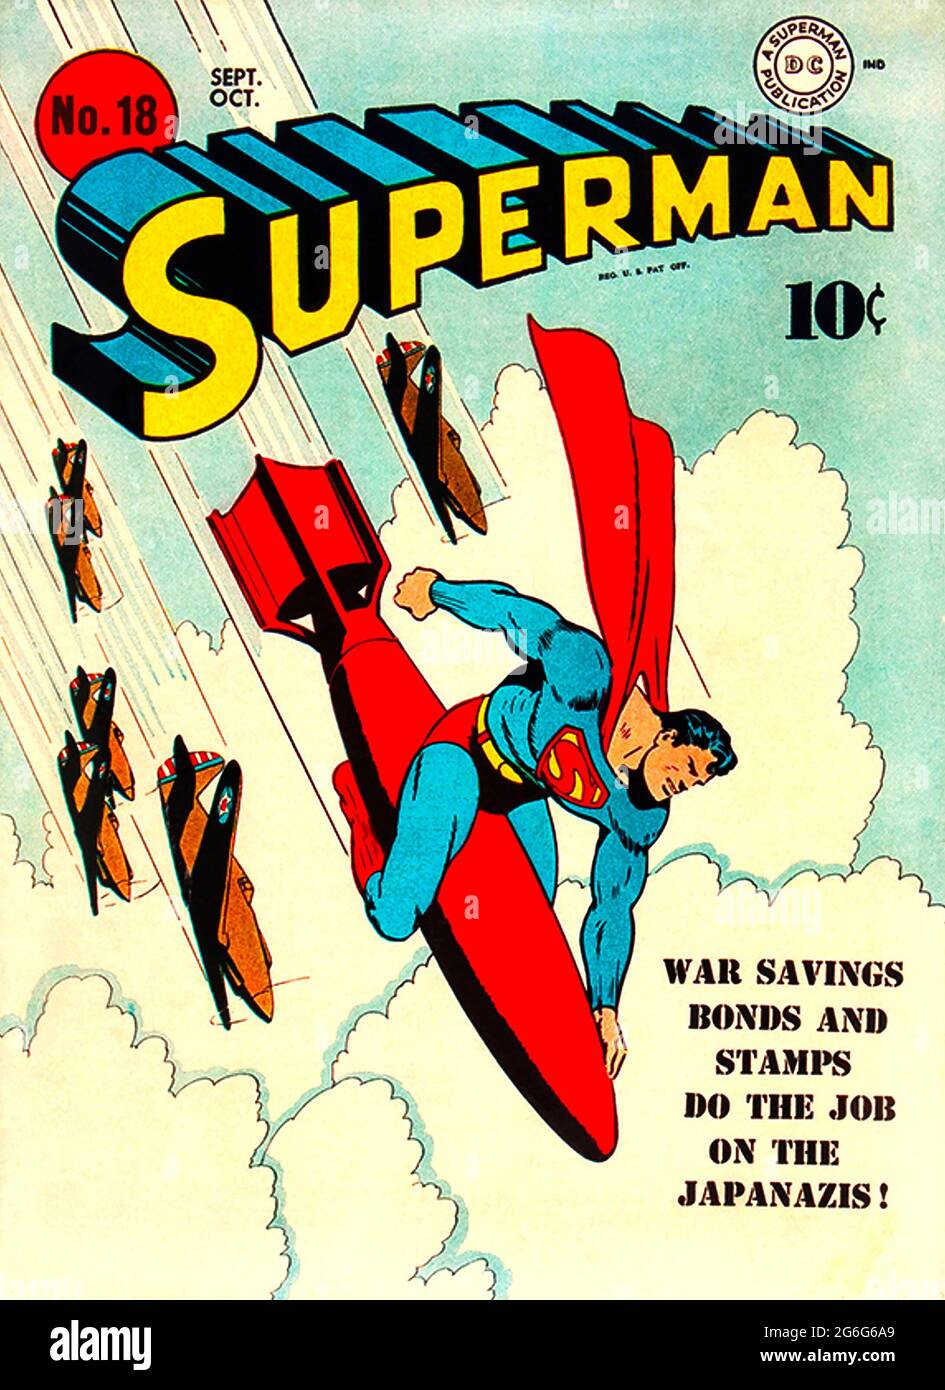 SUPERMAN l'eroe comico americano su una copertina del 1941 della serie pubblicata dalla DC Comics. Gli aerei mostrati sono Bell Airacobras che è entrato in servizio con la USAAF quell'anno. Foto Stock